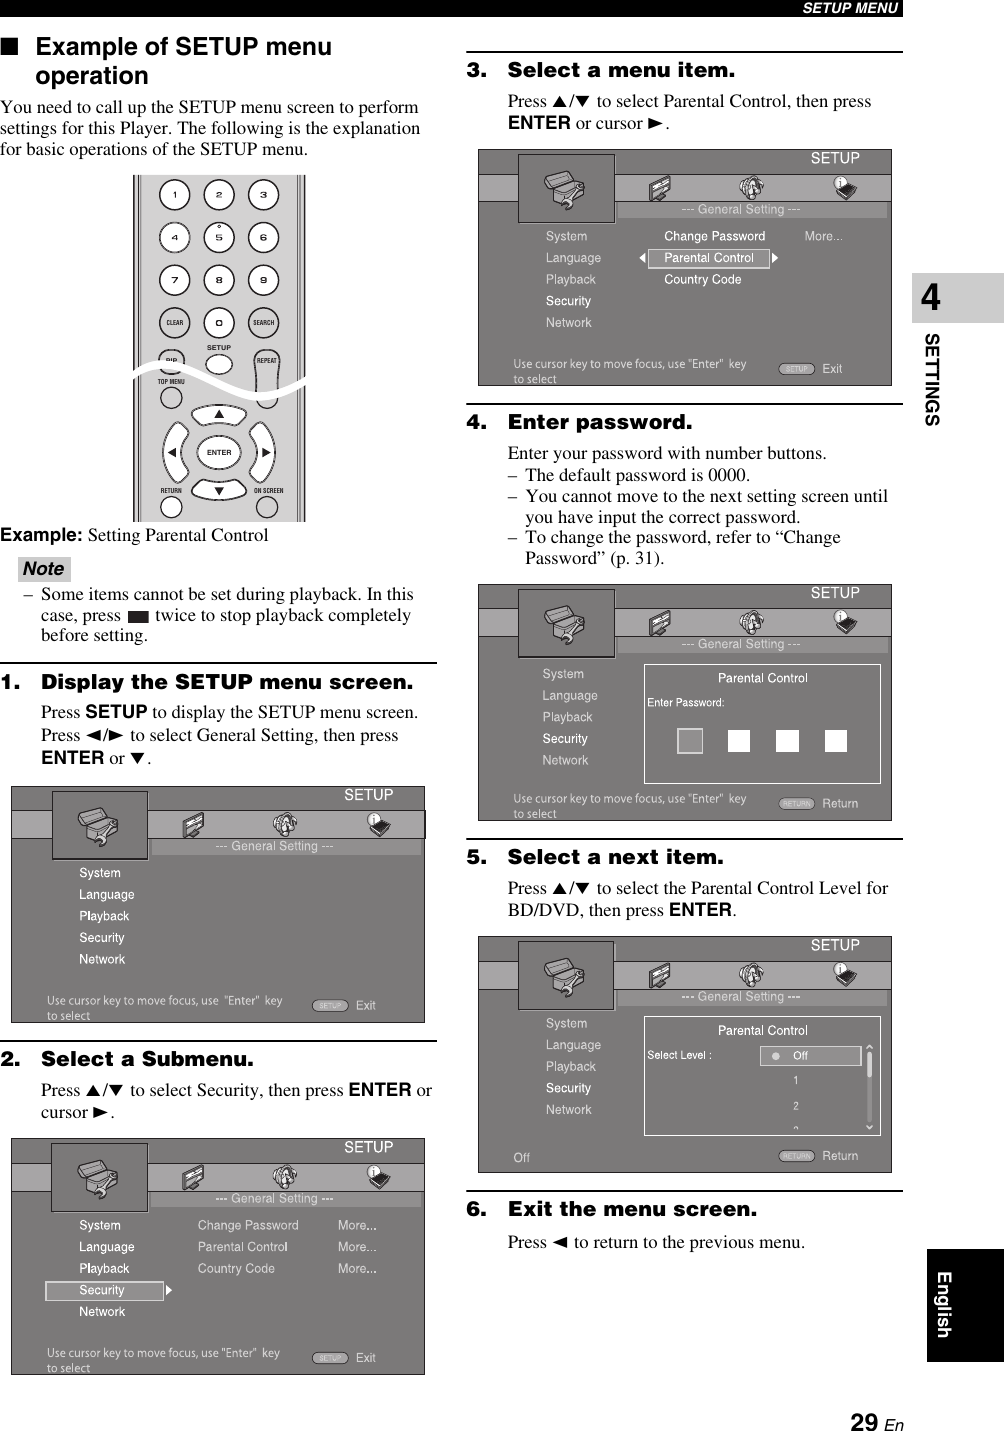 Yamaha Bd A1010 Users Manual